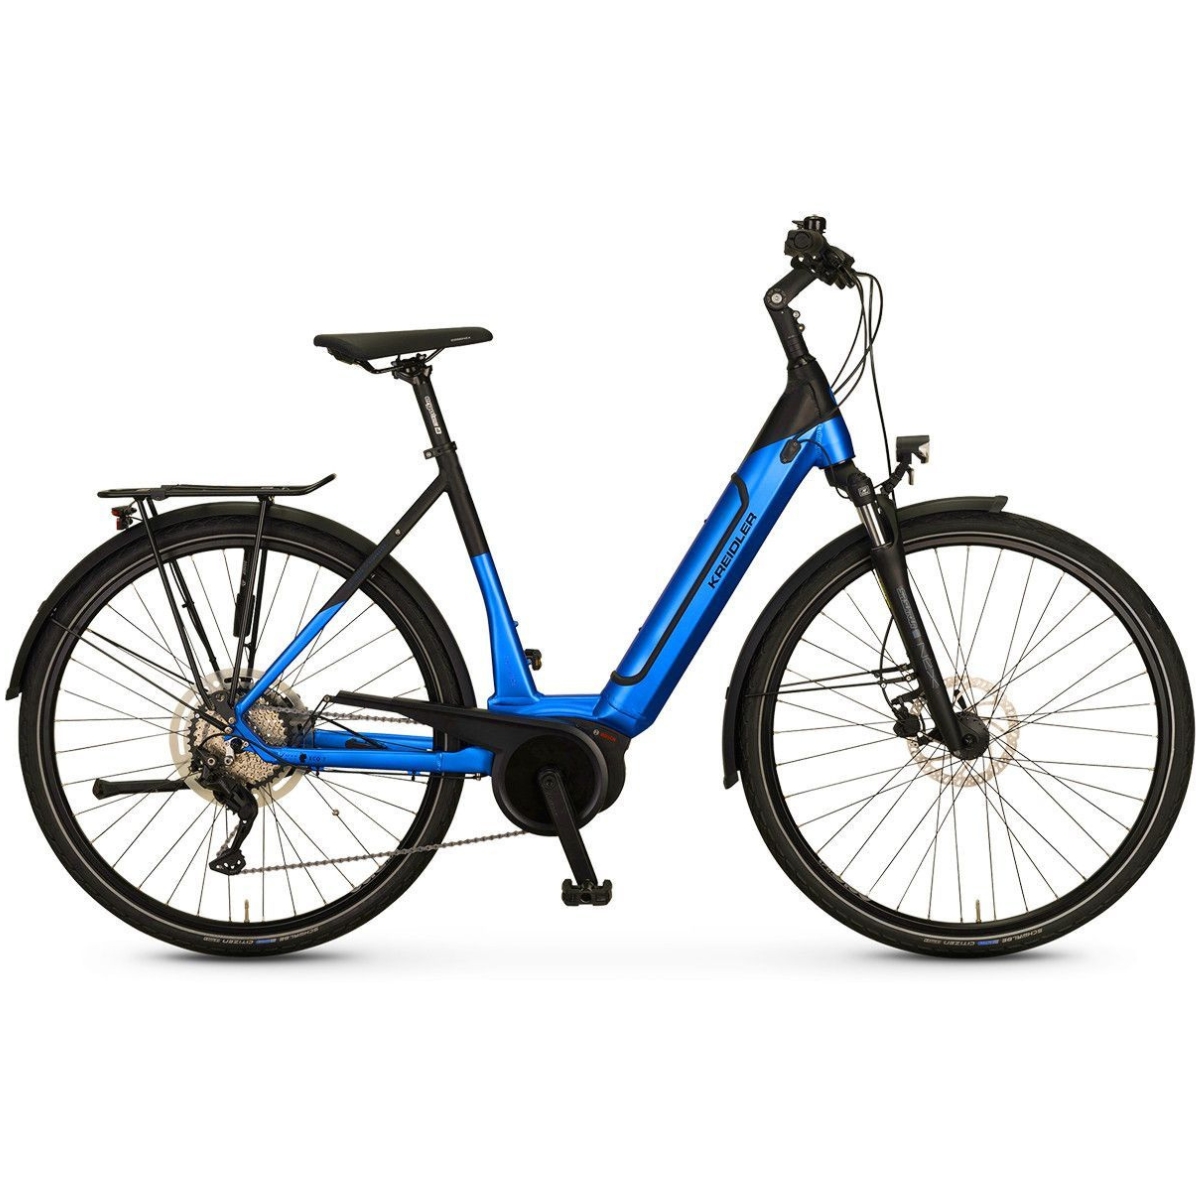 Kreidler E-Bike Modell Vitality Eco 7 Sport Microshift XLE 10-Gang / Bosch Perfomance Line / 500Wh / Disc Art. 122220130-122220131-122220132